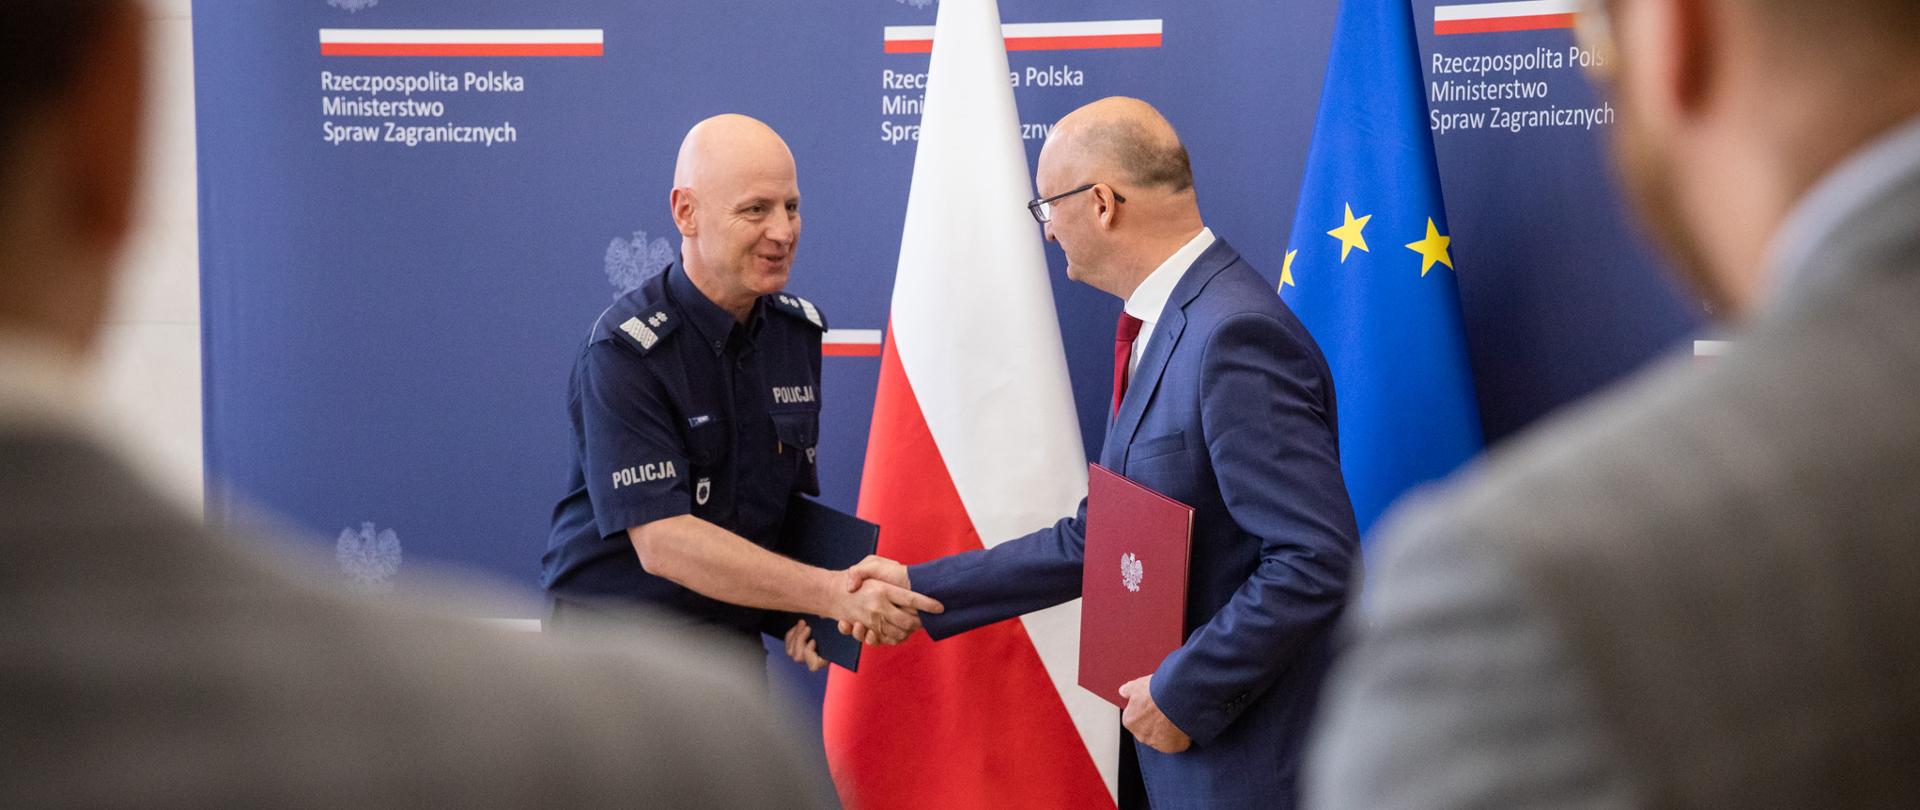 Podpisanie porozumienia pomiędzy Ministerstwem Spraw Zagranicznych i Komendą Główną Policji dotyczące współpracy w zakresie wzajemnych szkoleń i wymiany eksperckiej. 